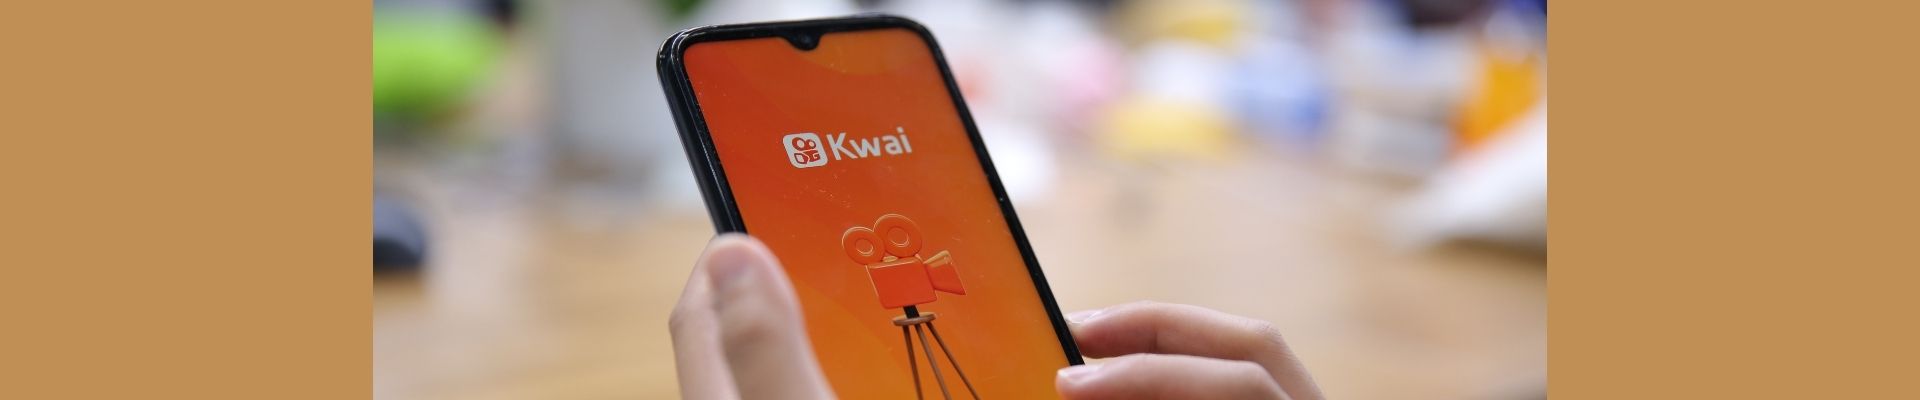 Kwai | Confira as 8 principais tendências para o segmento de vídeos curtos este ano